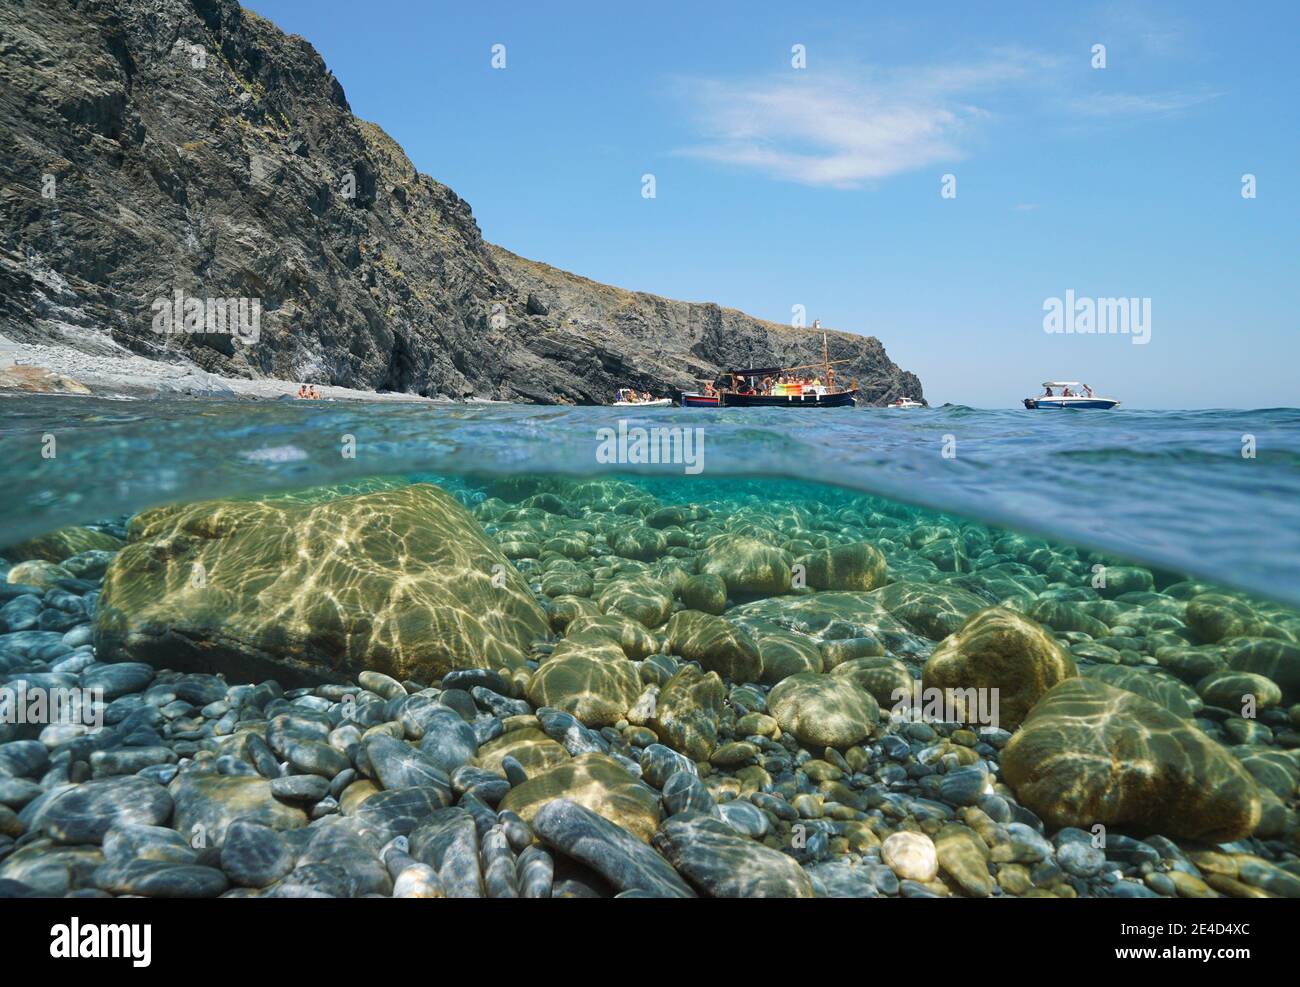 Mer Méditerranée, côte rocheuse avec bateaux et galets avec rochers sous-marins, vue partagée sous l'eau, Cap Cerbere entre l'Espagne et la France Banque D'Images